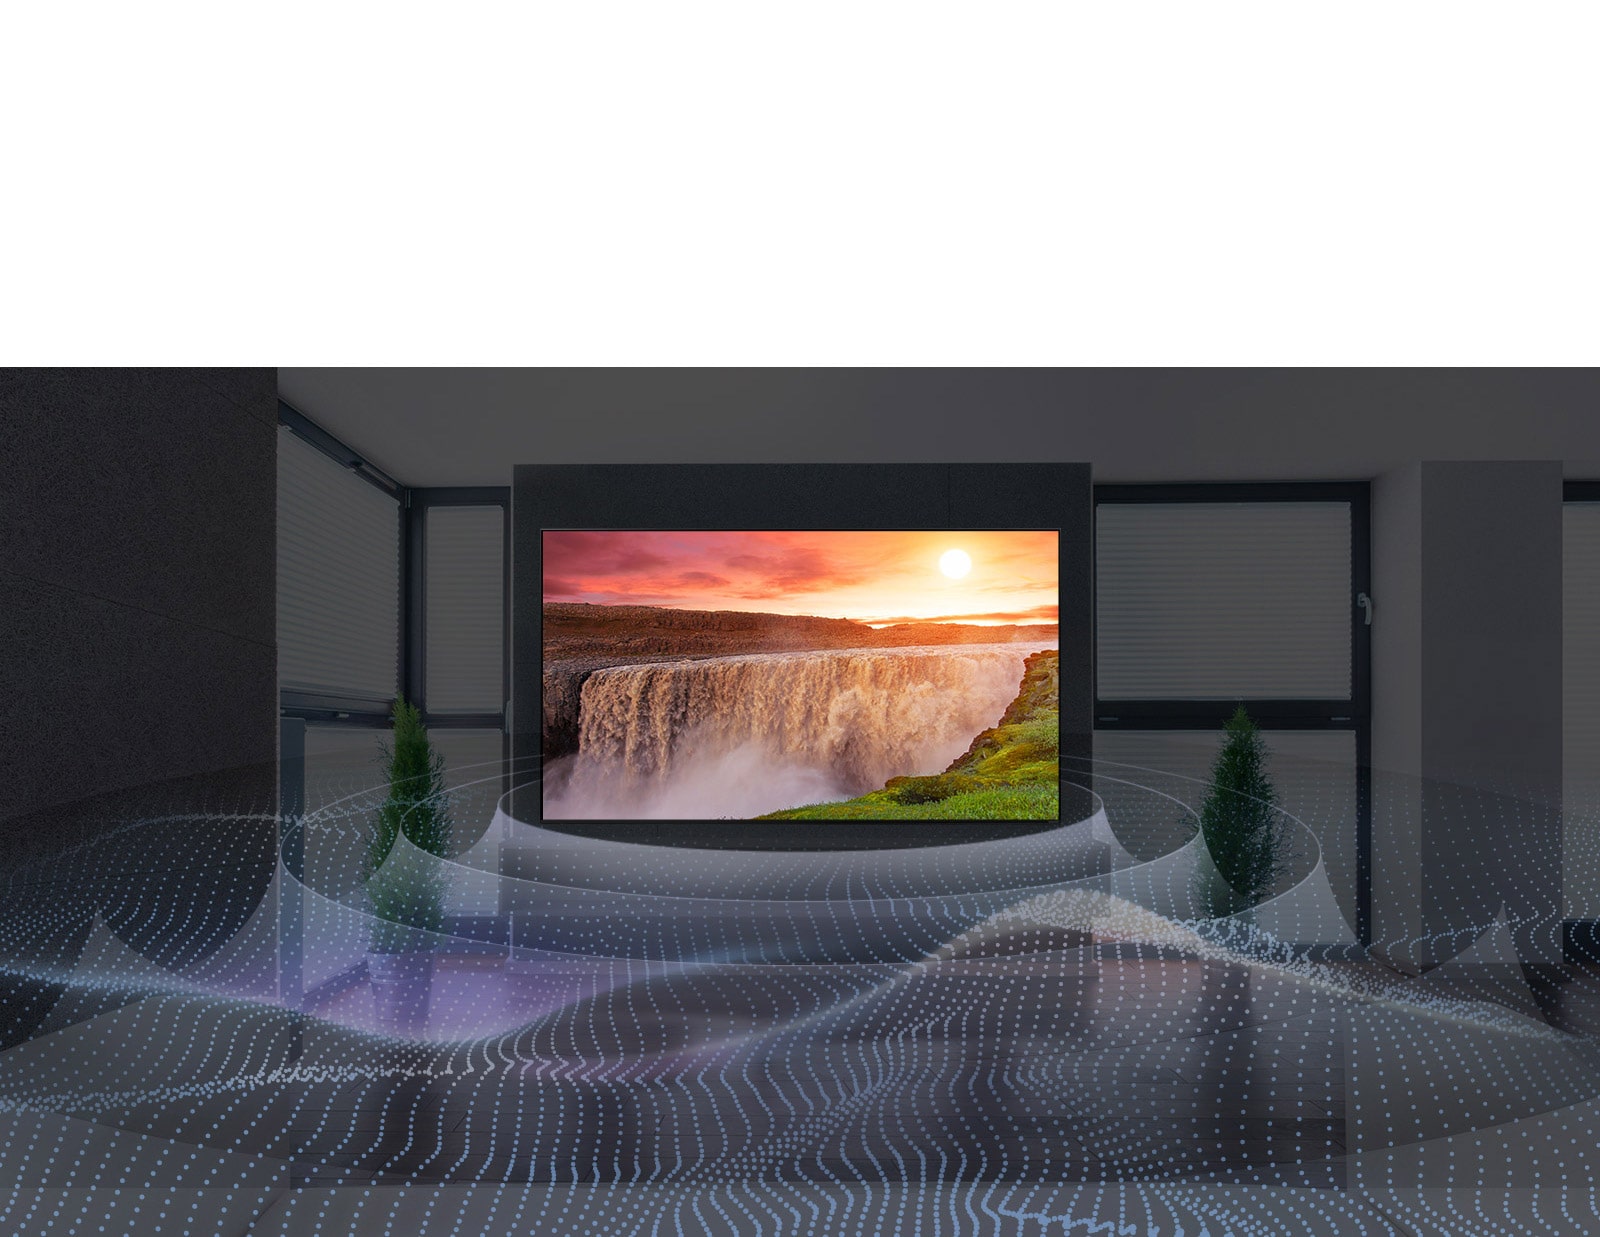 شلال عملاق على التلفزيون مع رسم صوتي محيطي